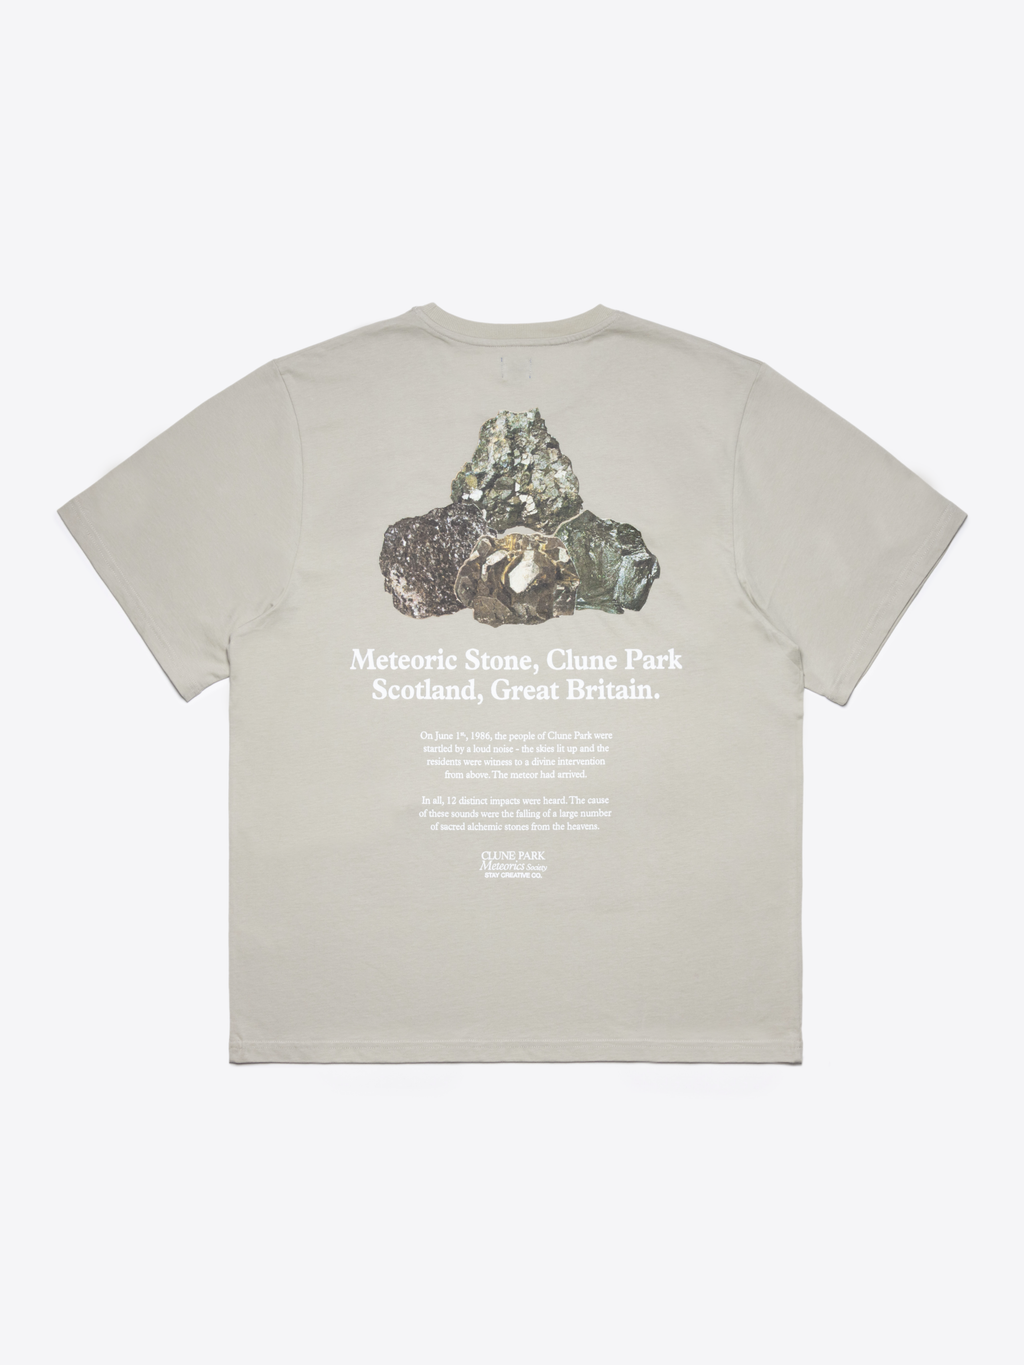 Rocks & Minerals T-Shirt - Stone